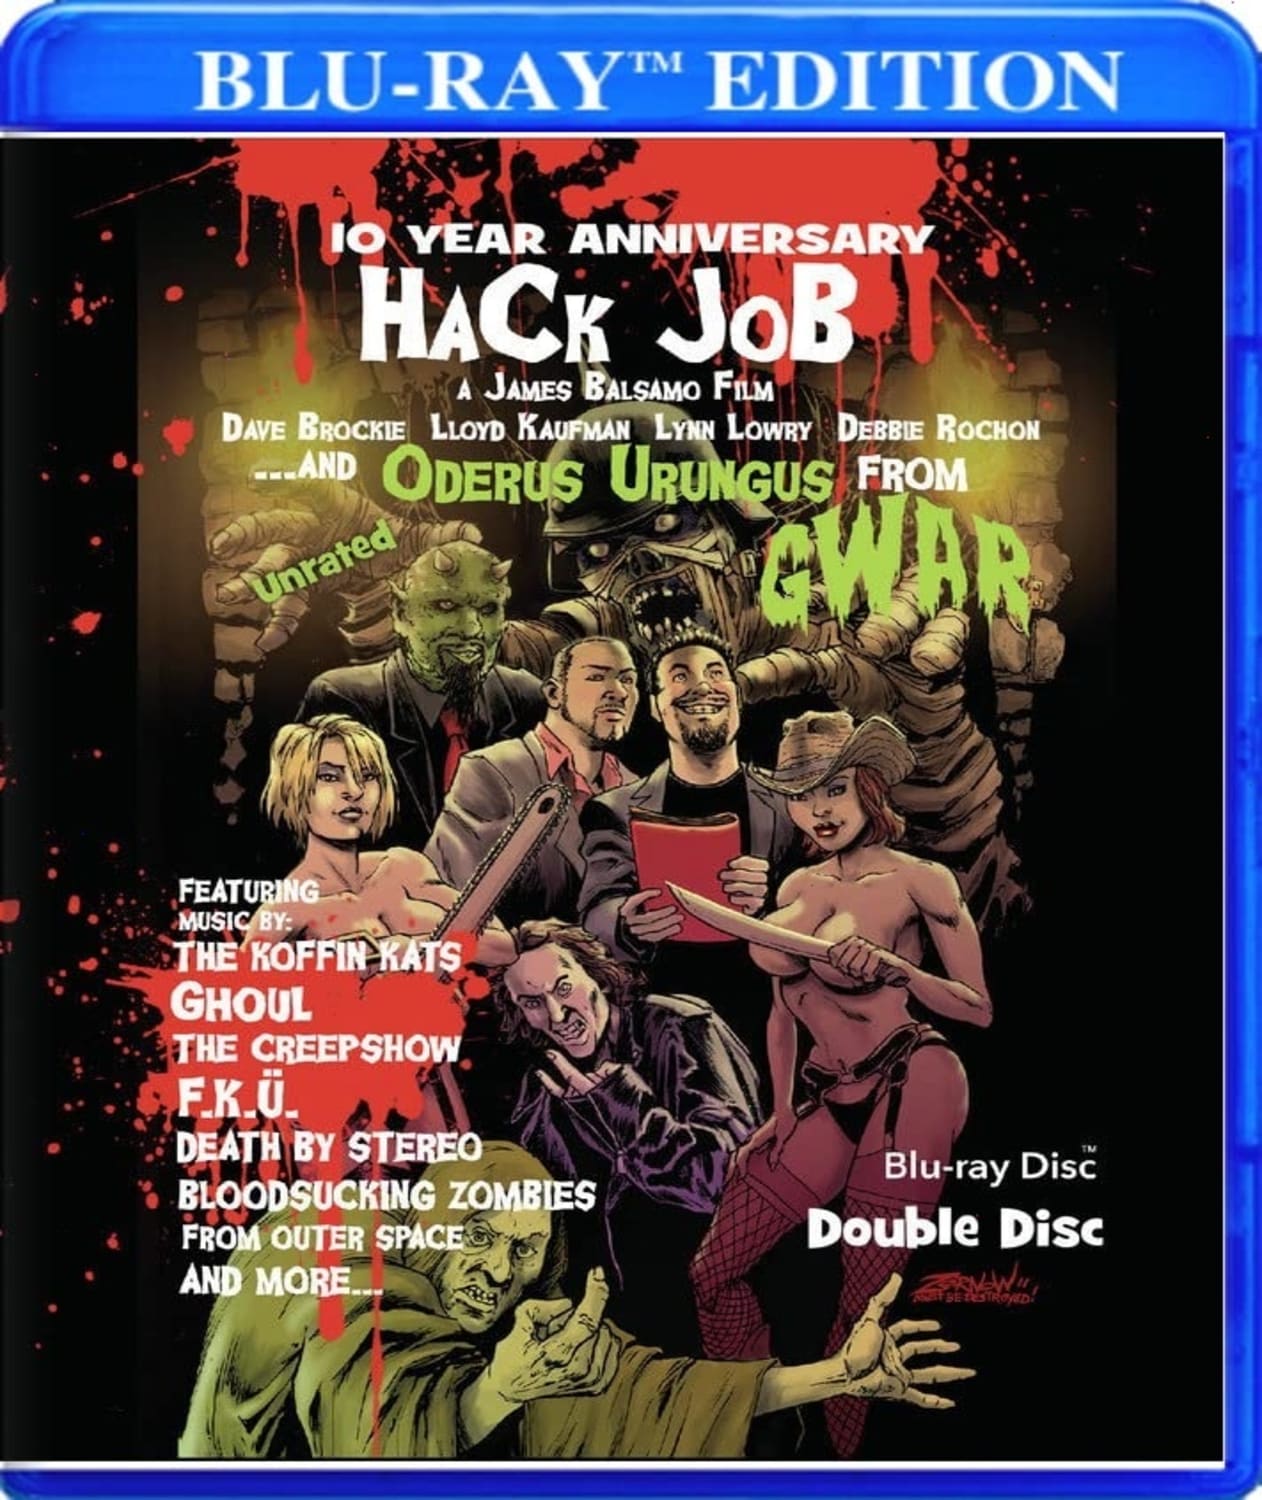 Hack JobHack Job (10 Year Anniversary) (Blu-ray) on MovieShack